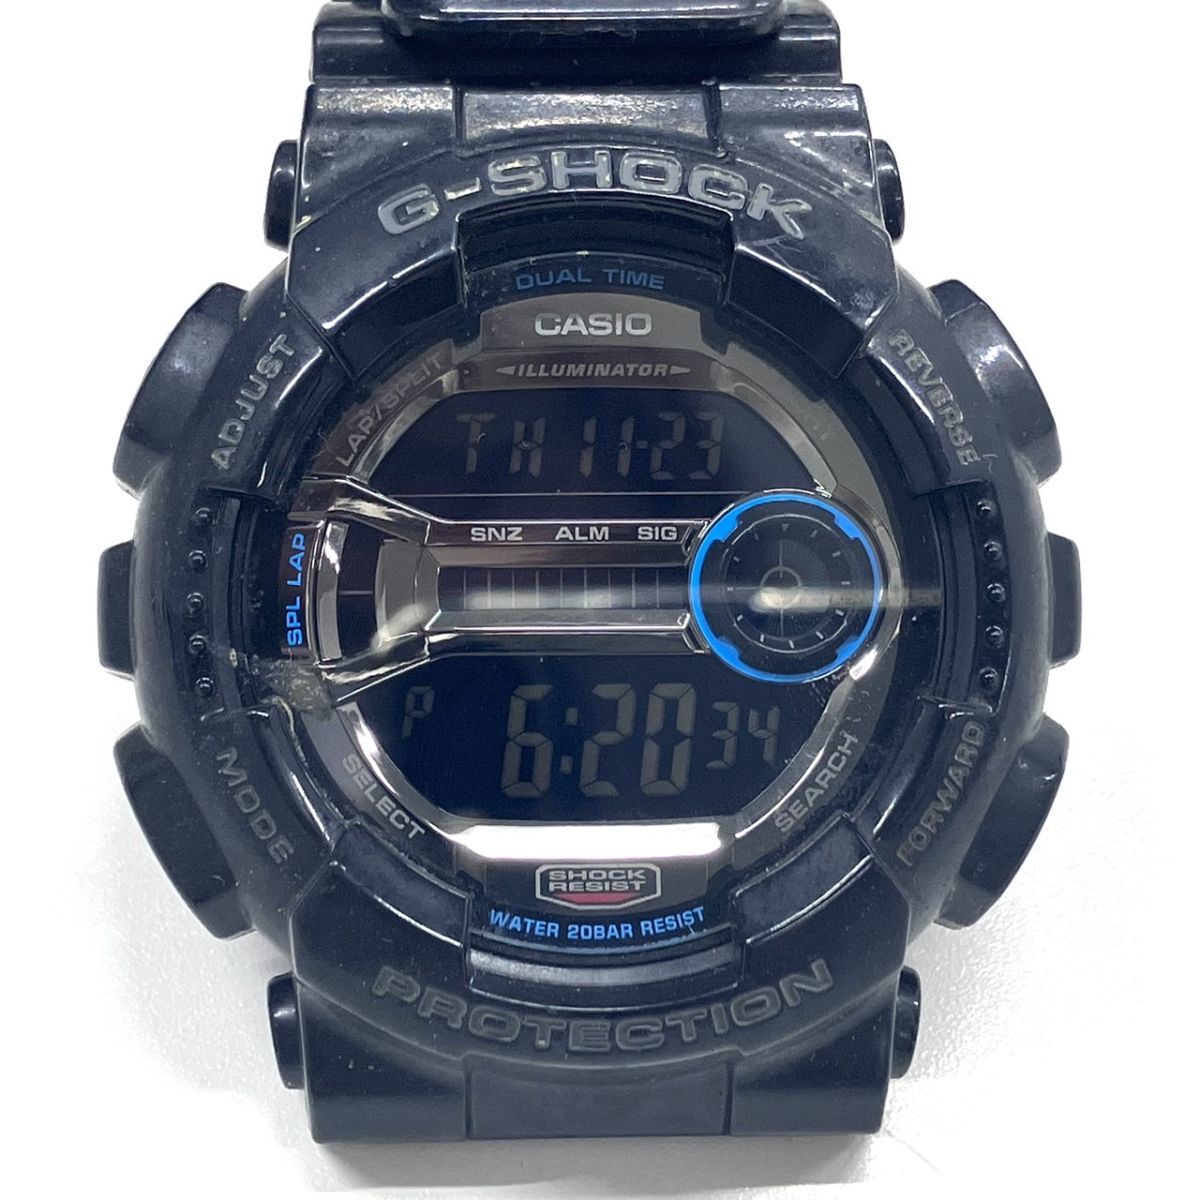 C042-CH1-160 ◎ CASIO カシオ G-SHOCK ジーショック GD-110-1JF メンズ 腕時計 クォーツ デジタル時計 ブラック 稼働①_画像1